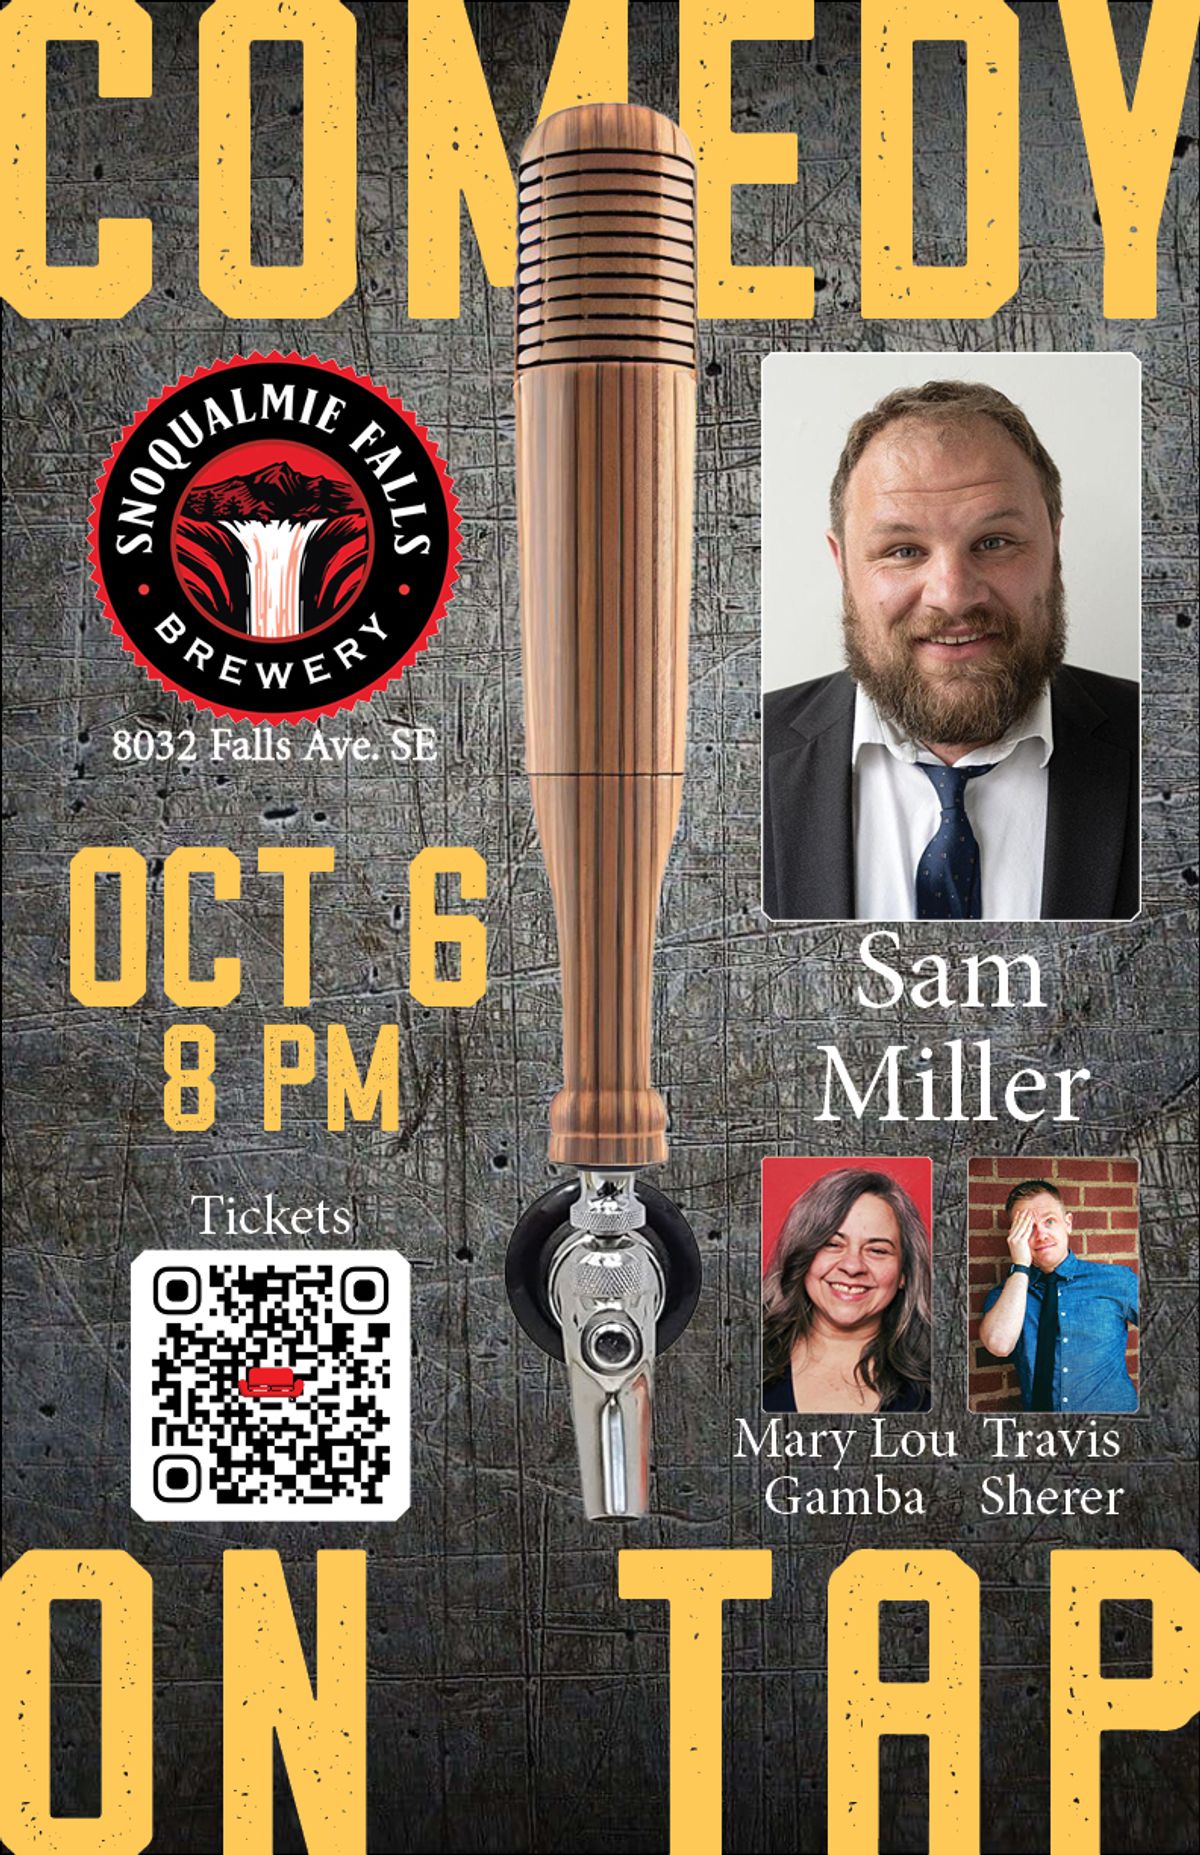 在华盛顿州斯诺库米瀑布酿酒厂和酒吧，与山姆·米勒一起现场欣赏喜剧表演 - 10月6日星期五